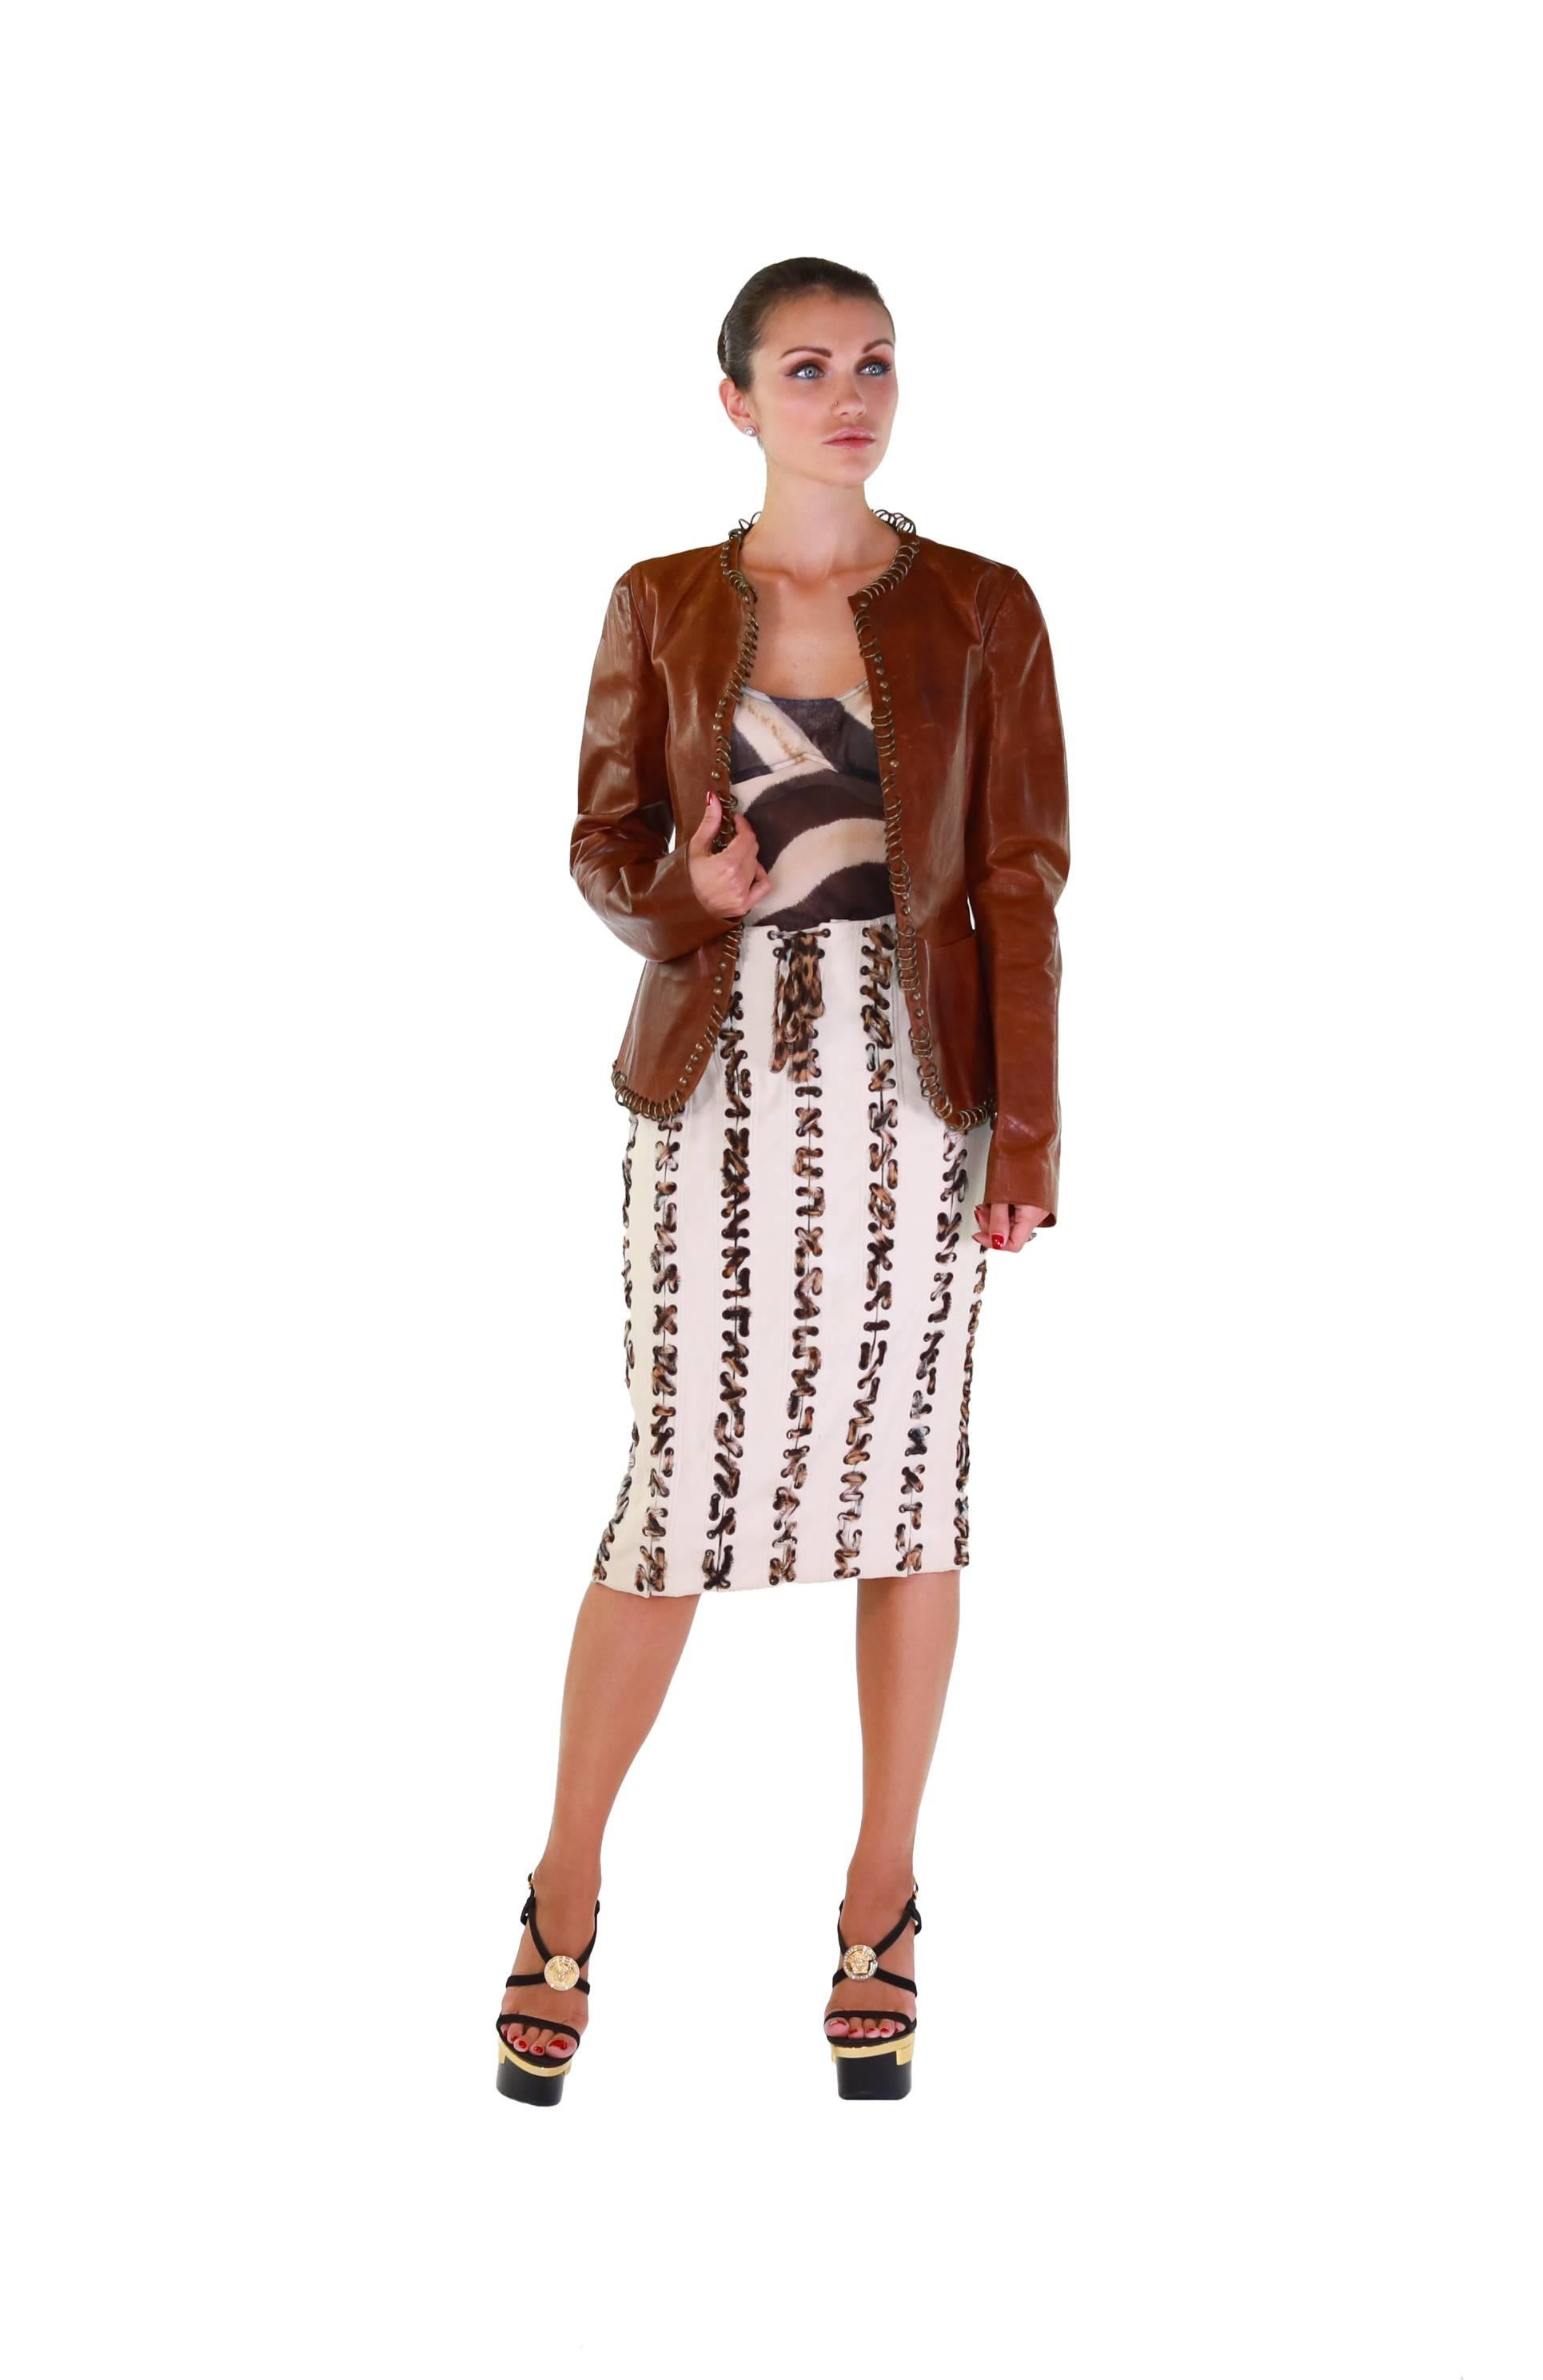 TOM FORD for YVES SAINT LAURENT

Safari Skirt
 
S/S 2002
 
100% Cotton
 
FR size 40 - US 8

waist 16